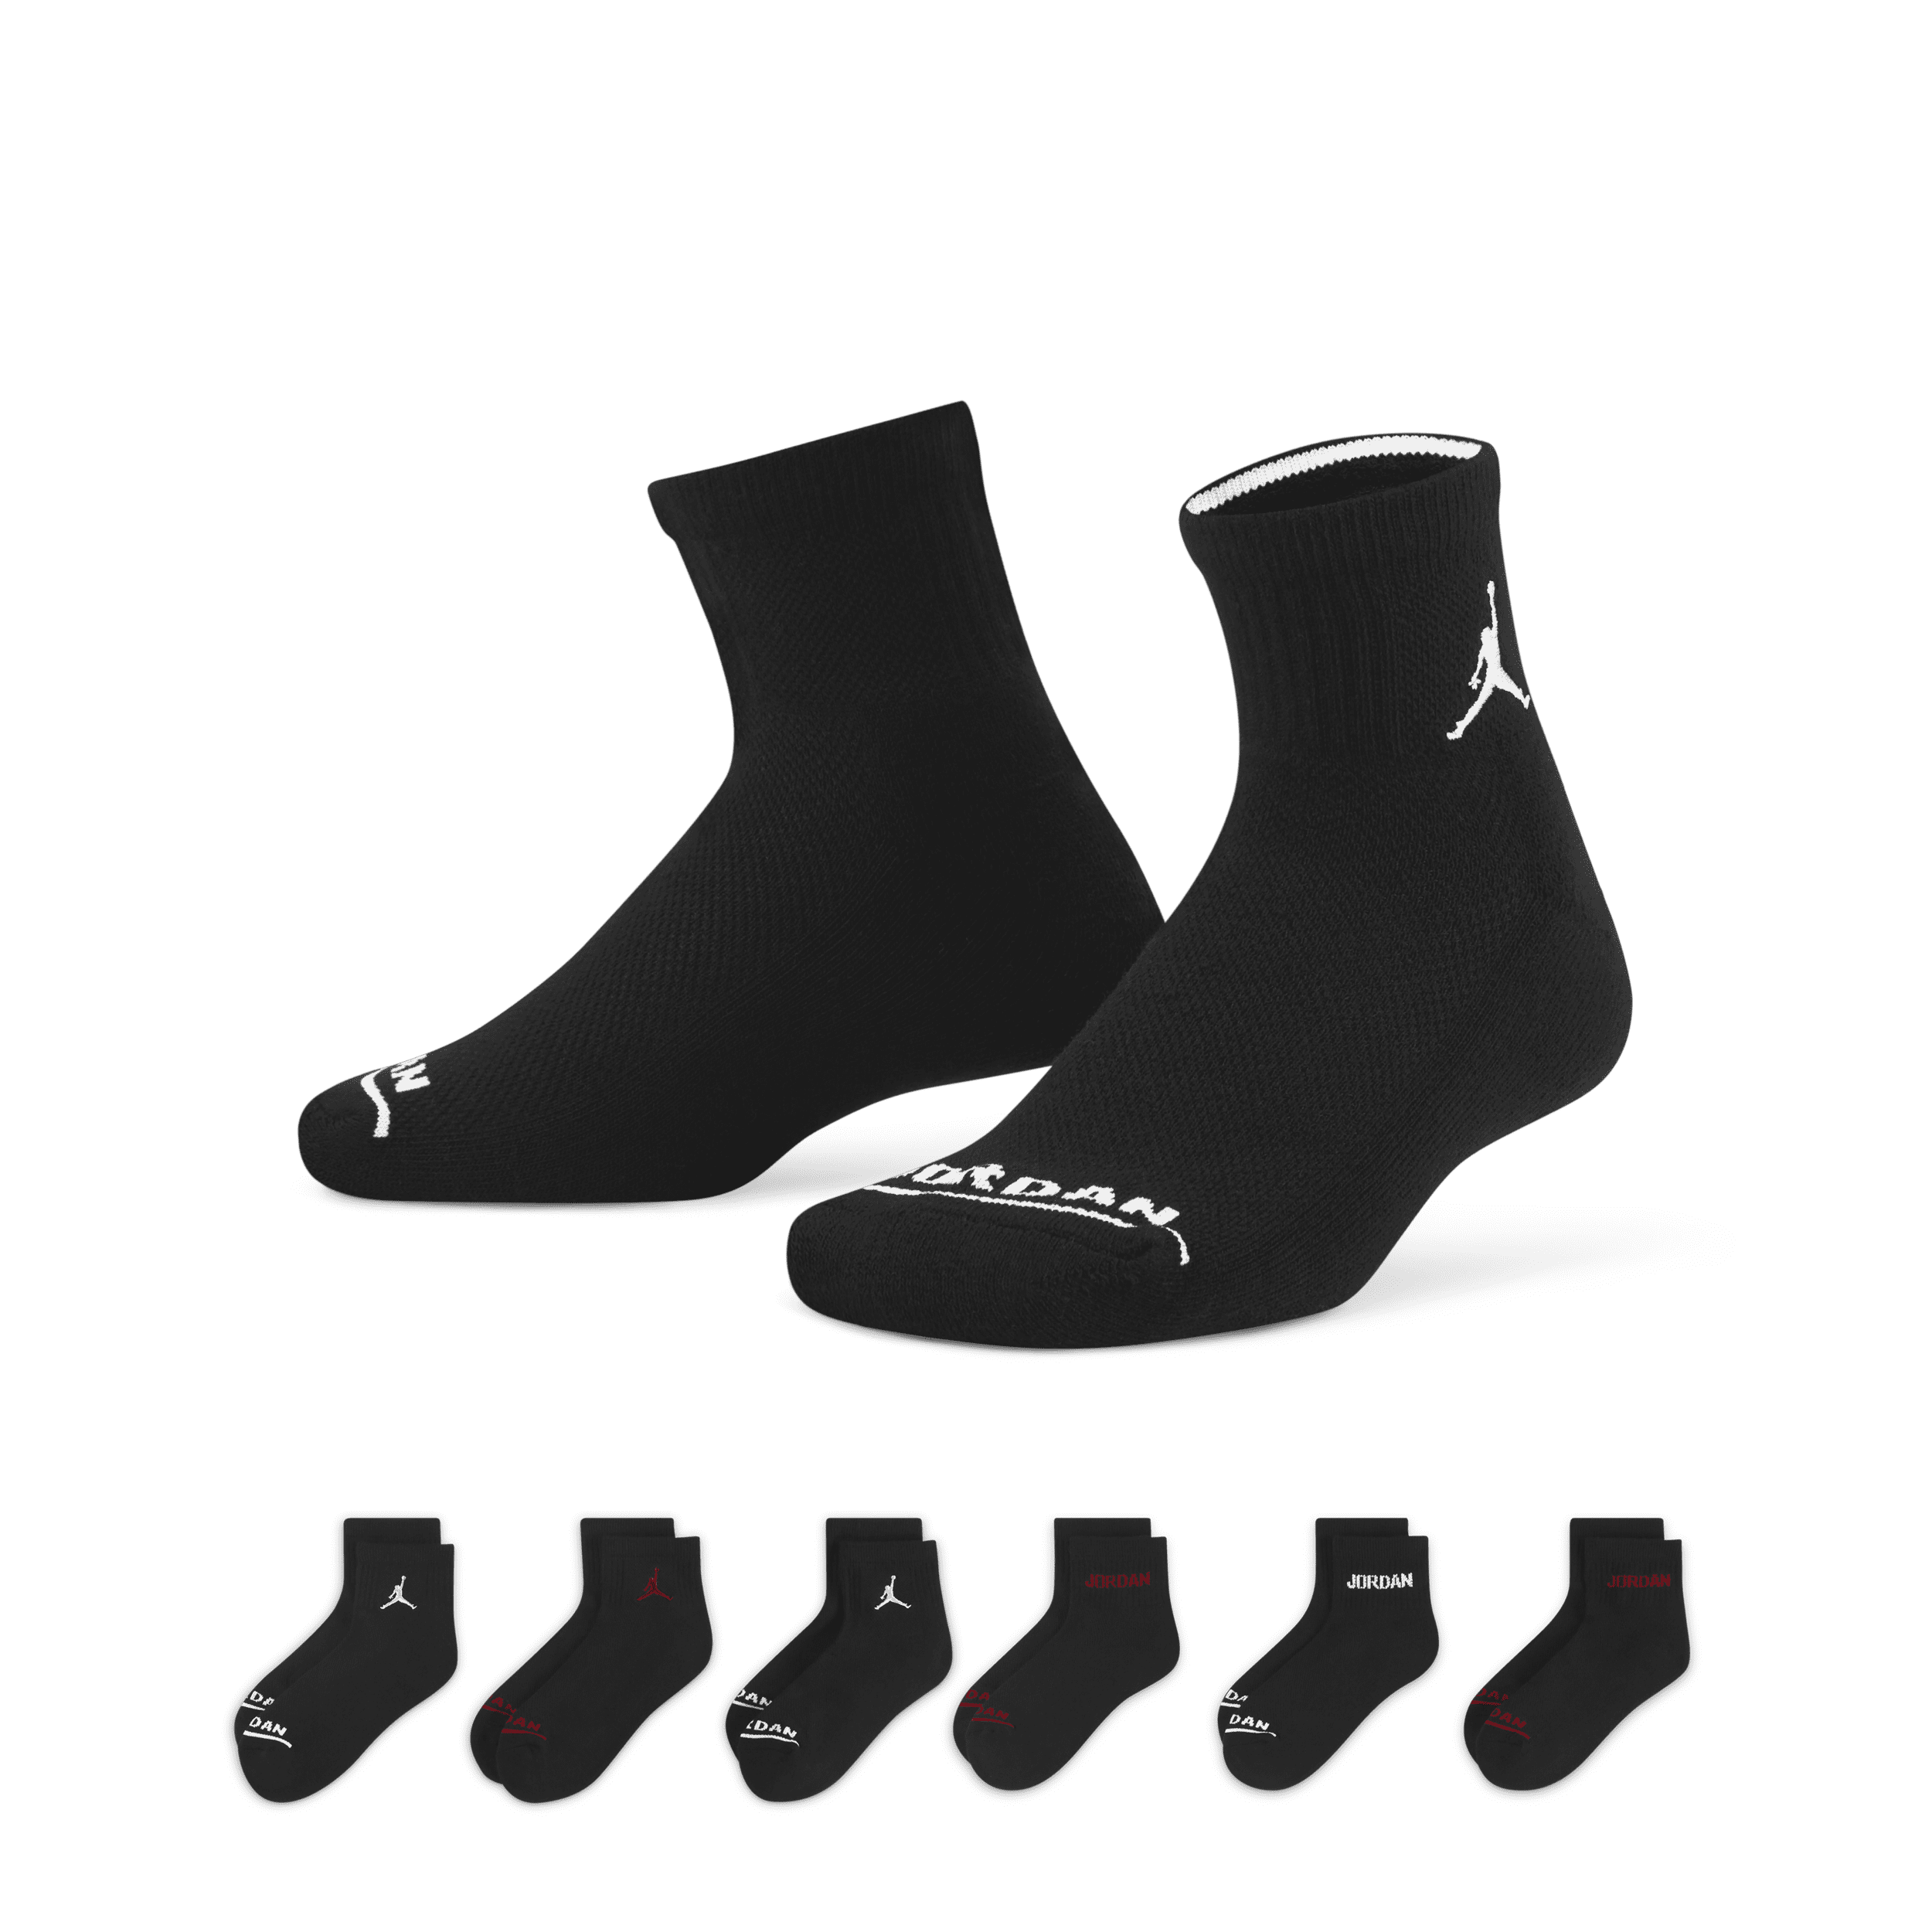 Jordan Enkelsokken voor kleuters (6 paar) Zwart